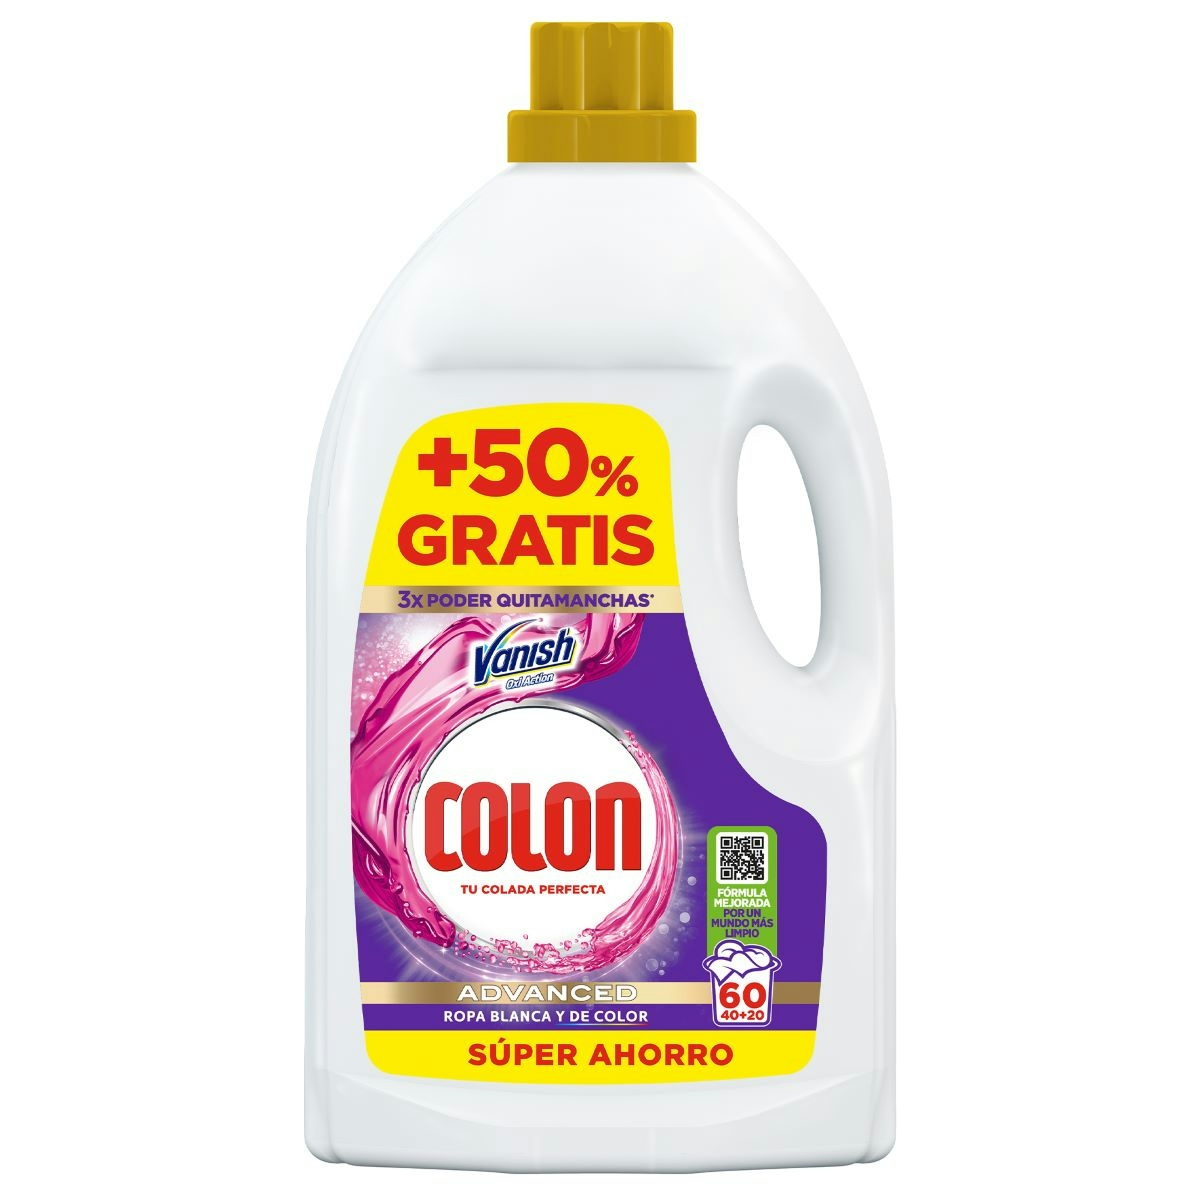 Detergente Gel Vanish Advance Colon 40 Dosis + 50% Gratis